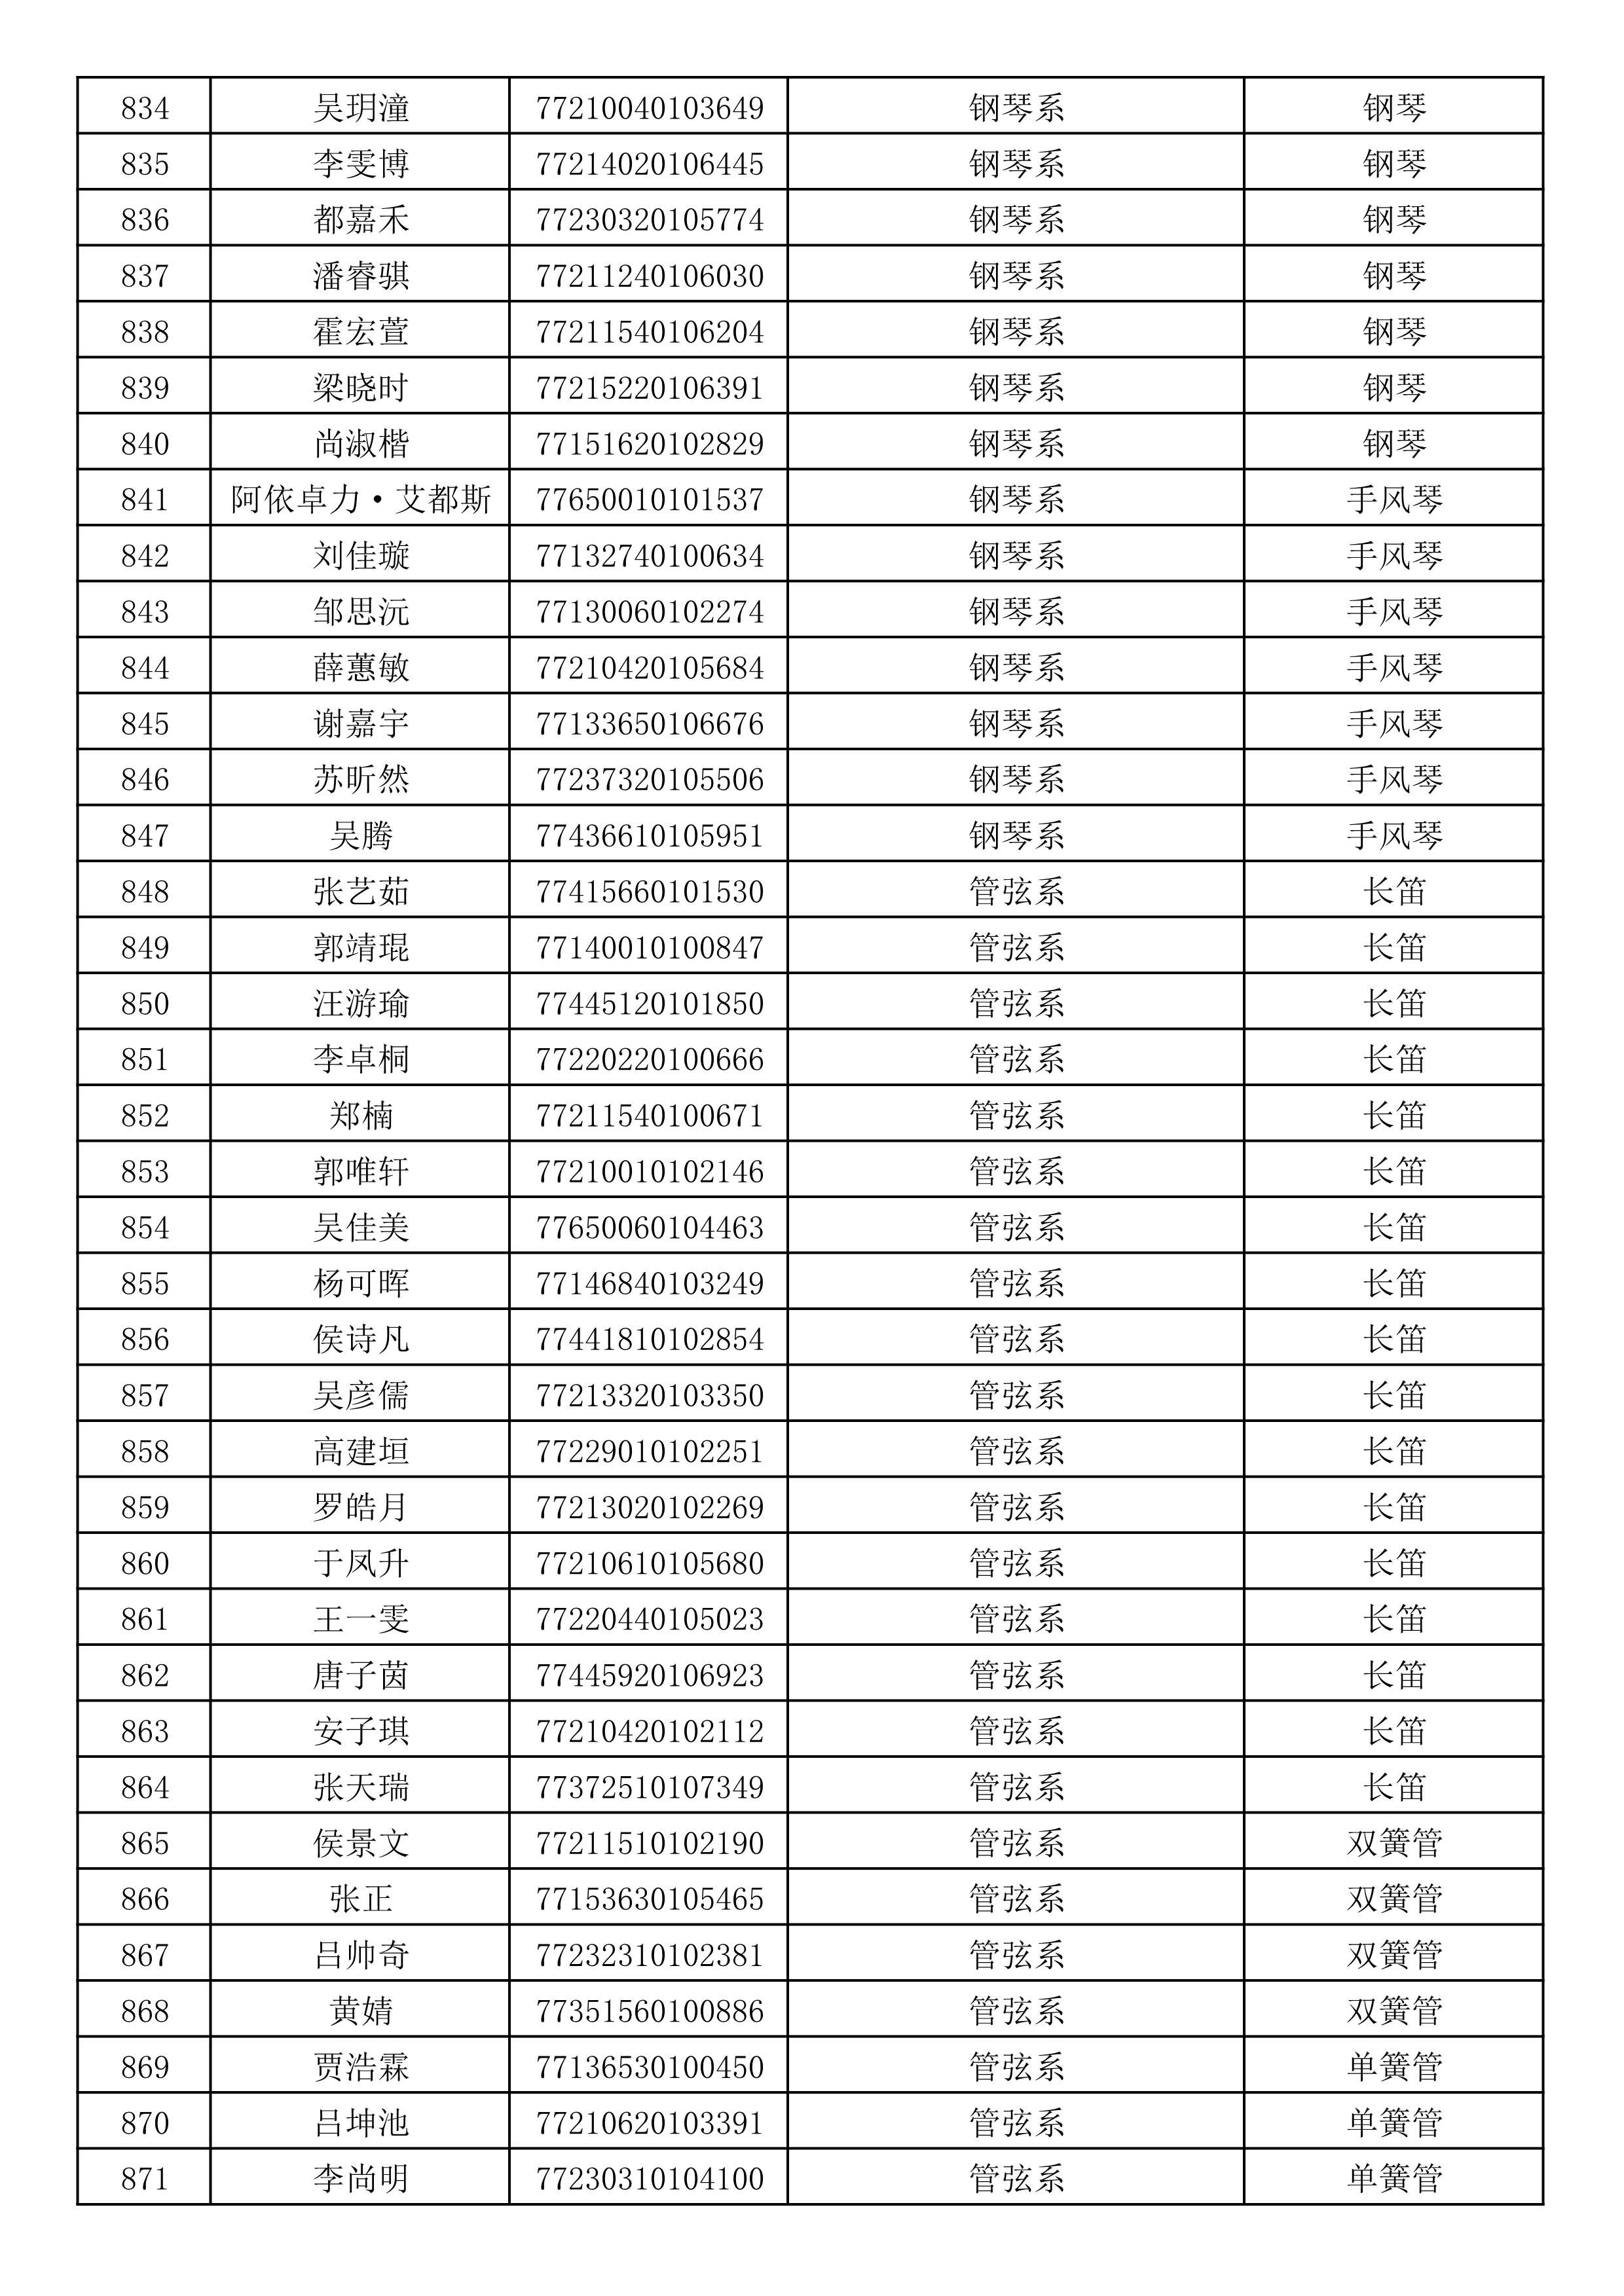 沈阳音乐学院2019年本科招生考试初试合格名单_23.jpg